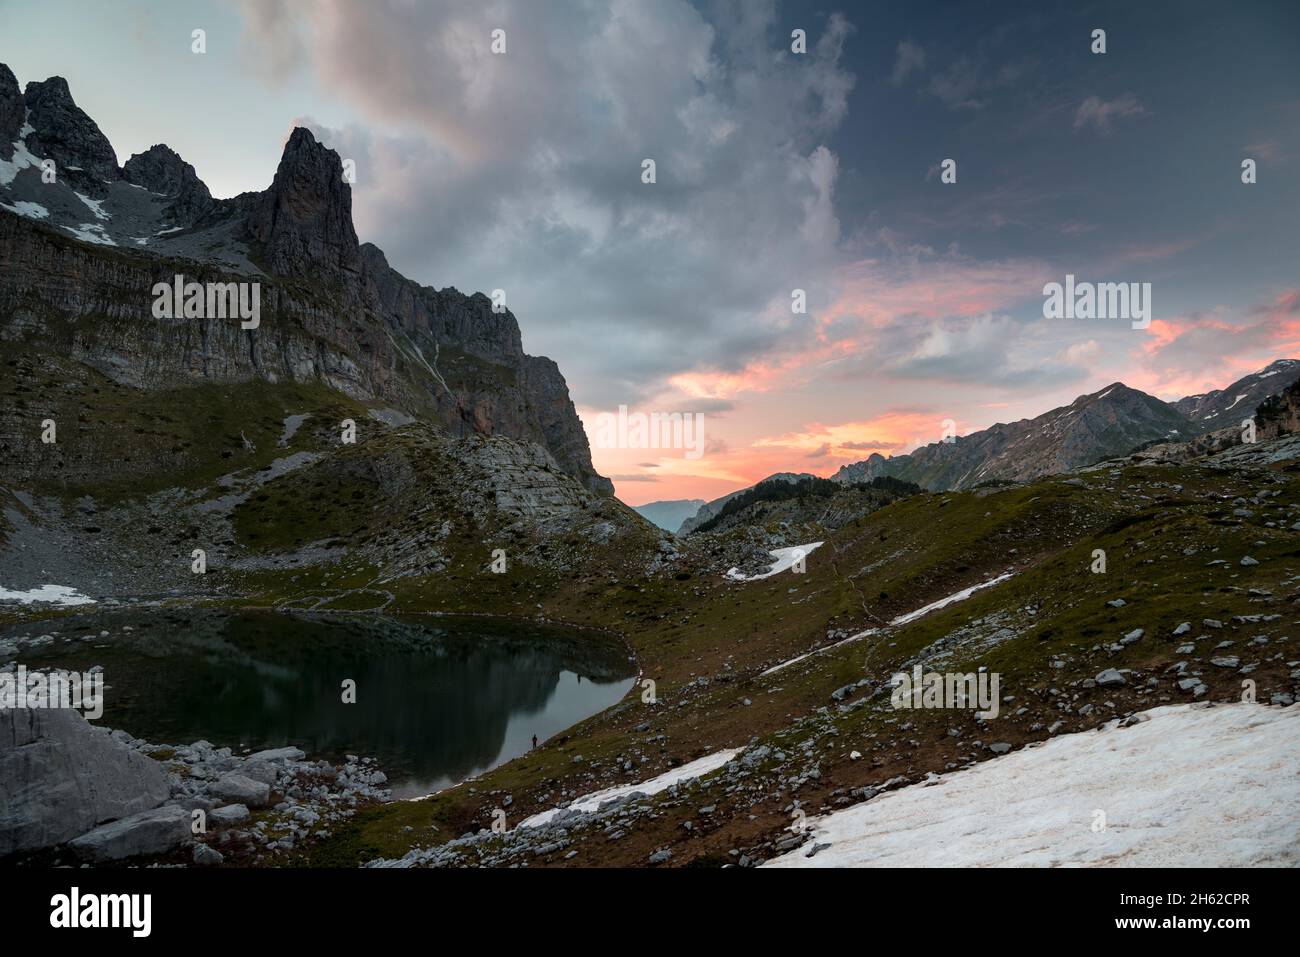 une seule personne, à peine visible, se dresse sur le bord d'un lac de montagne et regarde le coucher de soleil dans le paysage accidenté, monténégro, albanie, prokletije parc national Banque D'Images